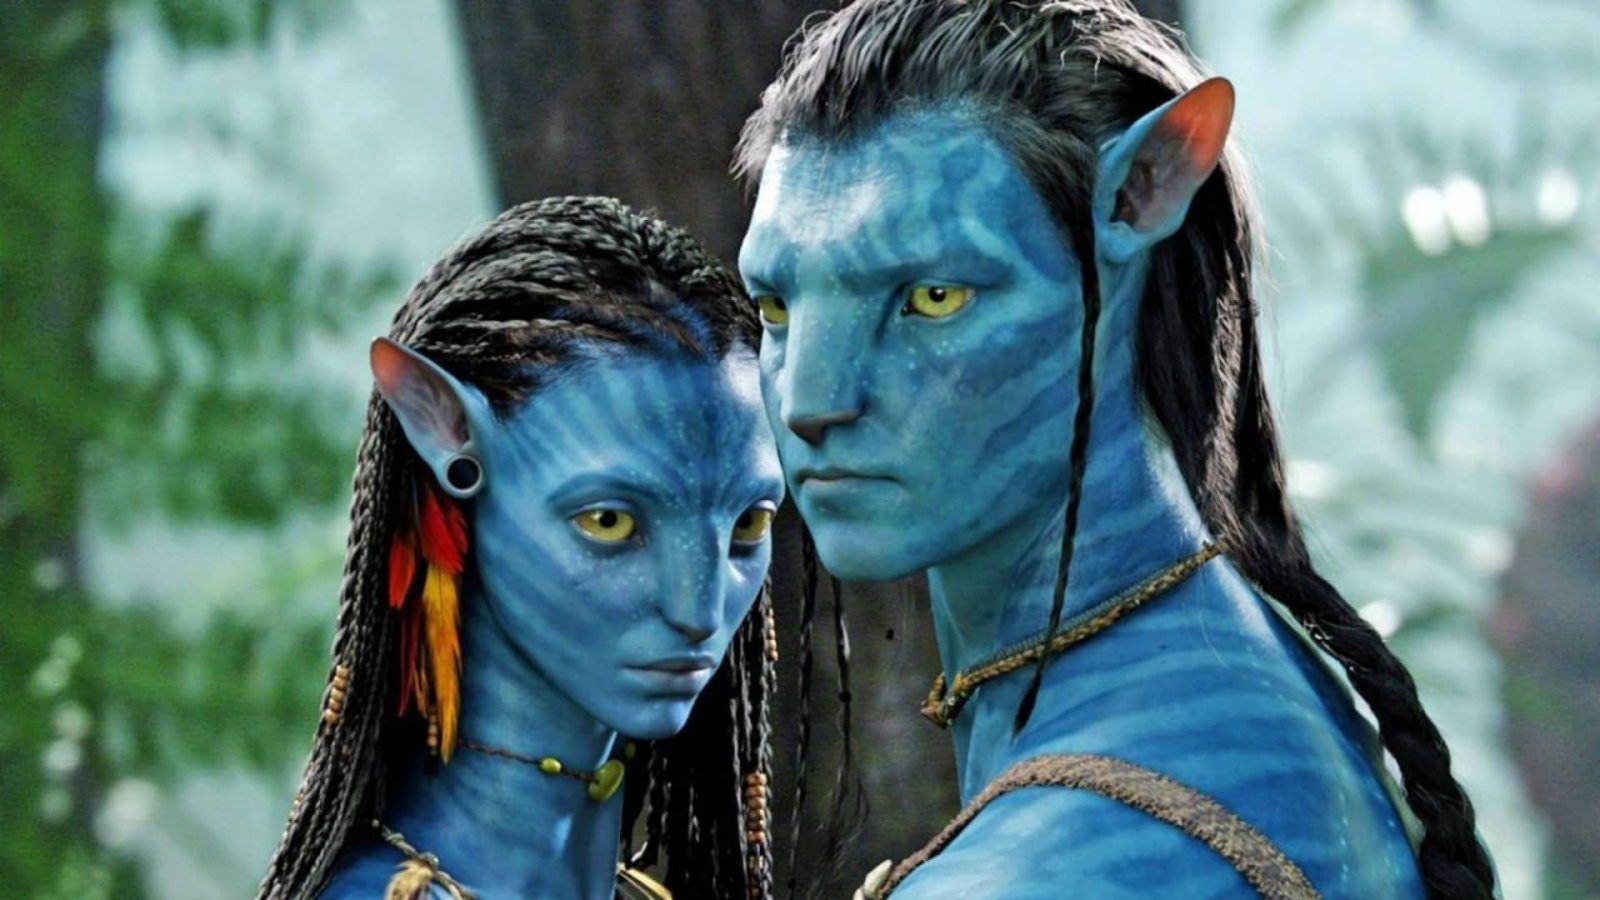 Avatar La Via dell'Acqua ha guadagnato più di mezzo miliardo di dollari, per un'analisi